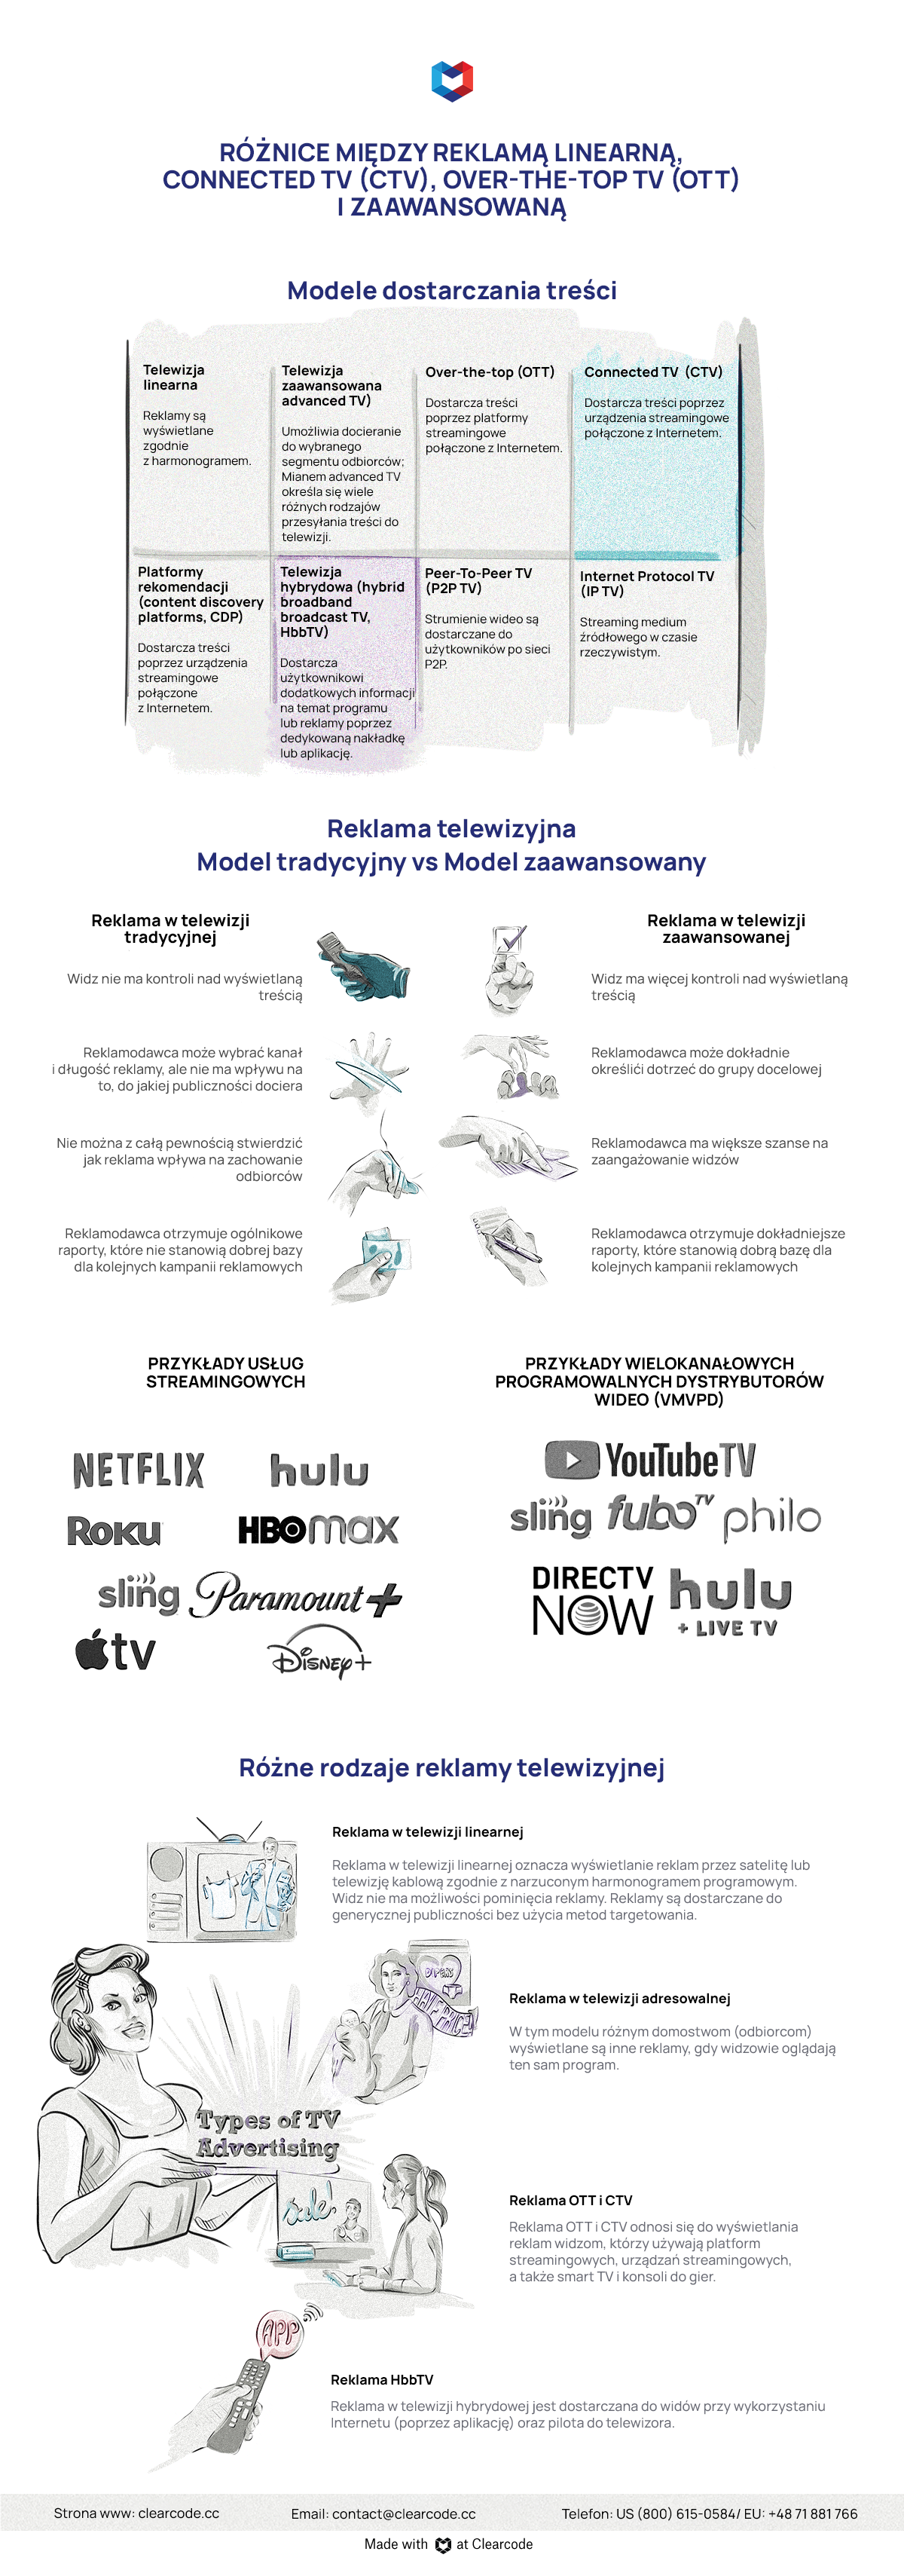 różnice między modelami reklamy telewizyjnej - infografika 